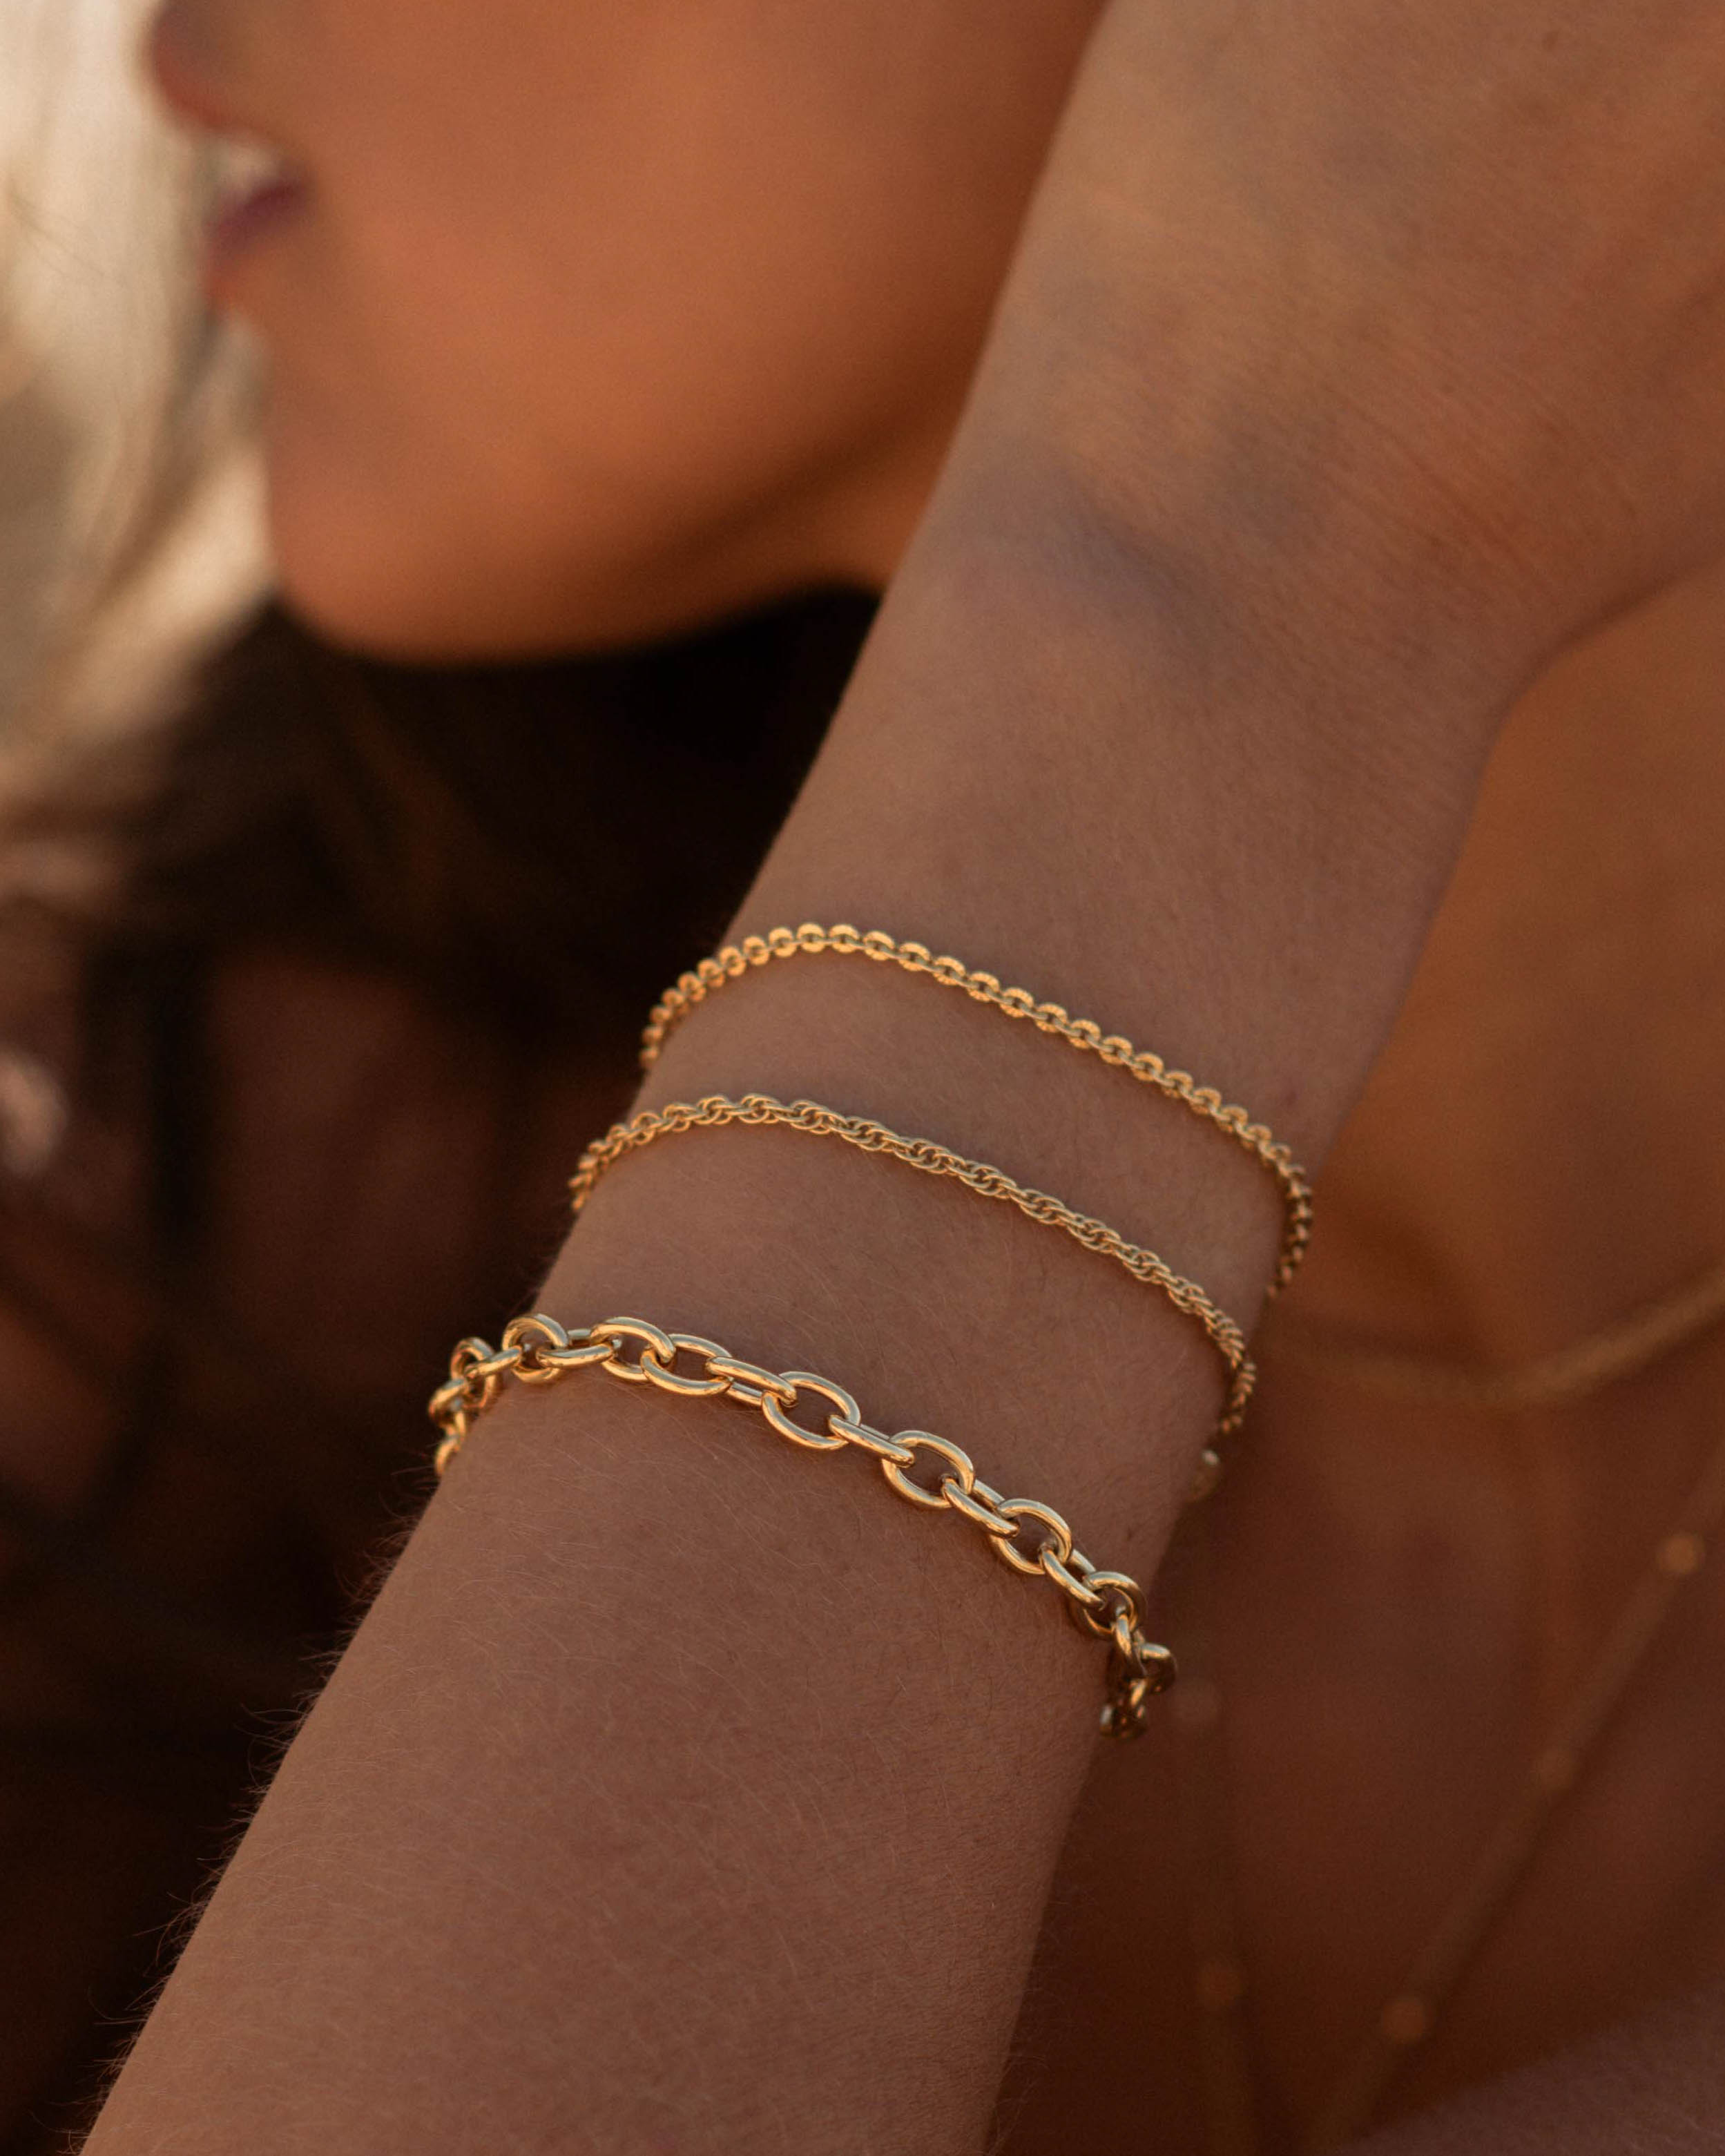 Association de bracelets éthiques composées d'un bracelet fin en maille soleil, d'un fin en maille corde et d'un bracelet en chaîne épais aux maillons larges et ovales en plaqué or 3 microns et made in France.